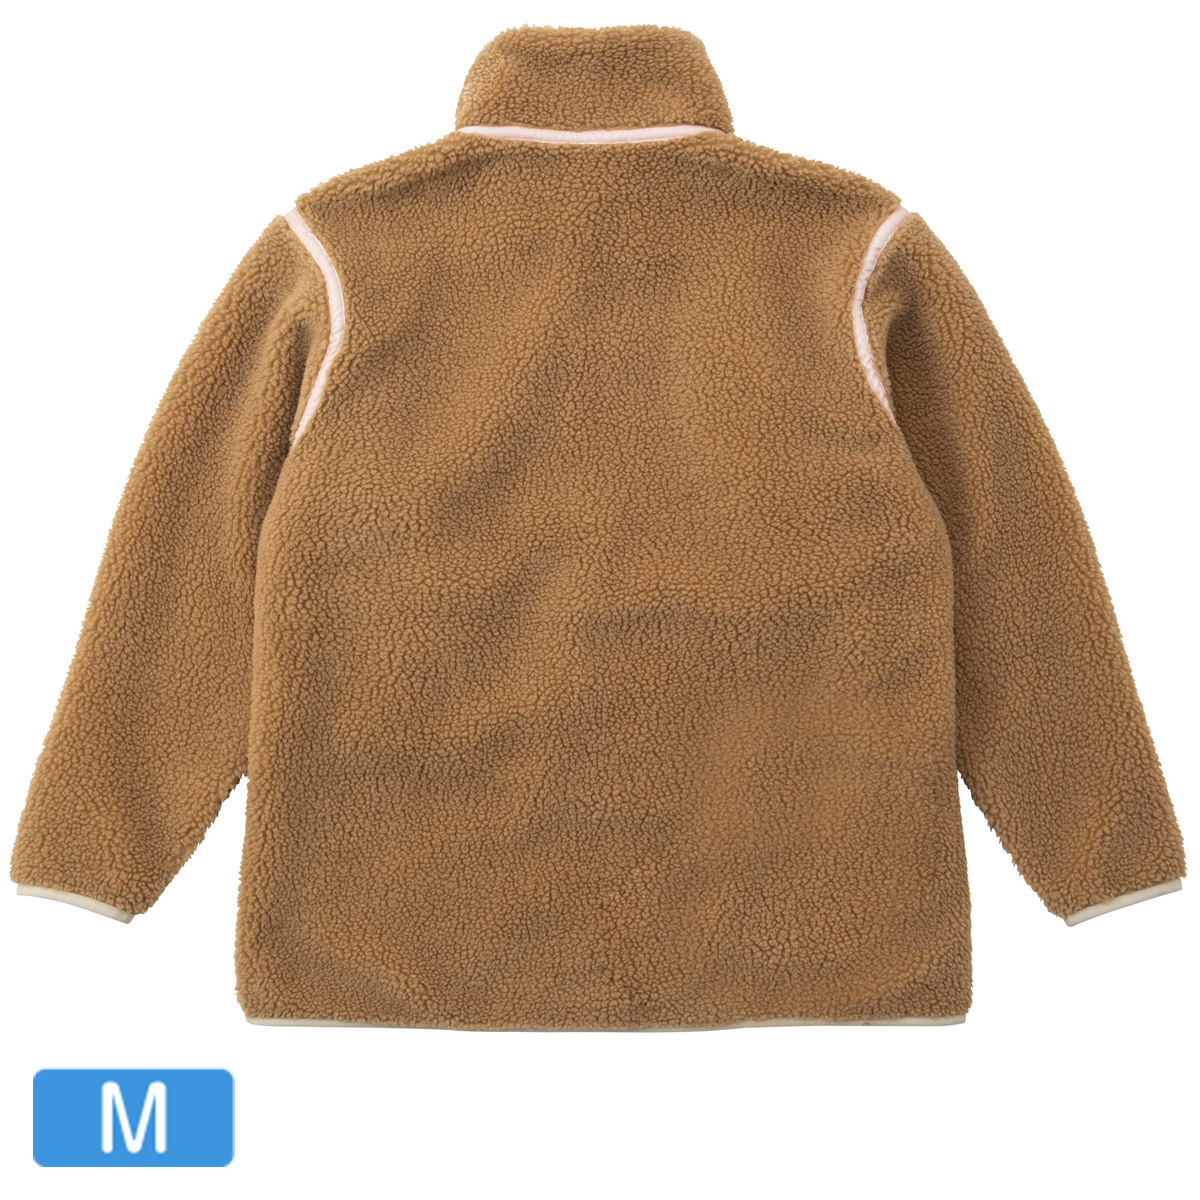 【アウトレット】W’s Sheep Fleece Jacket / ウィメンズシープフリースジャケット バーク Mサイズ